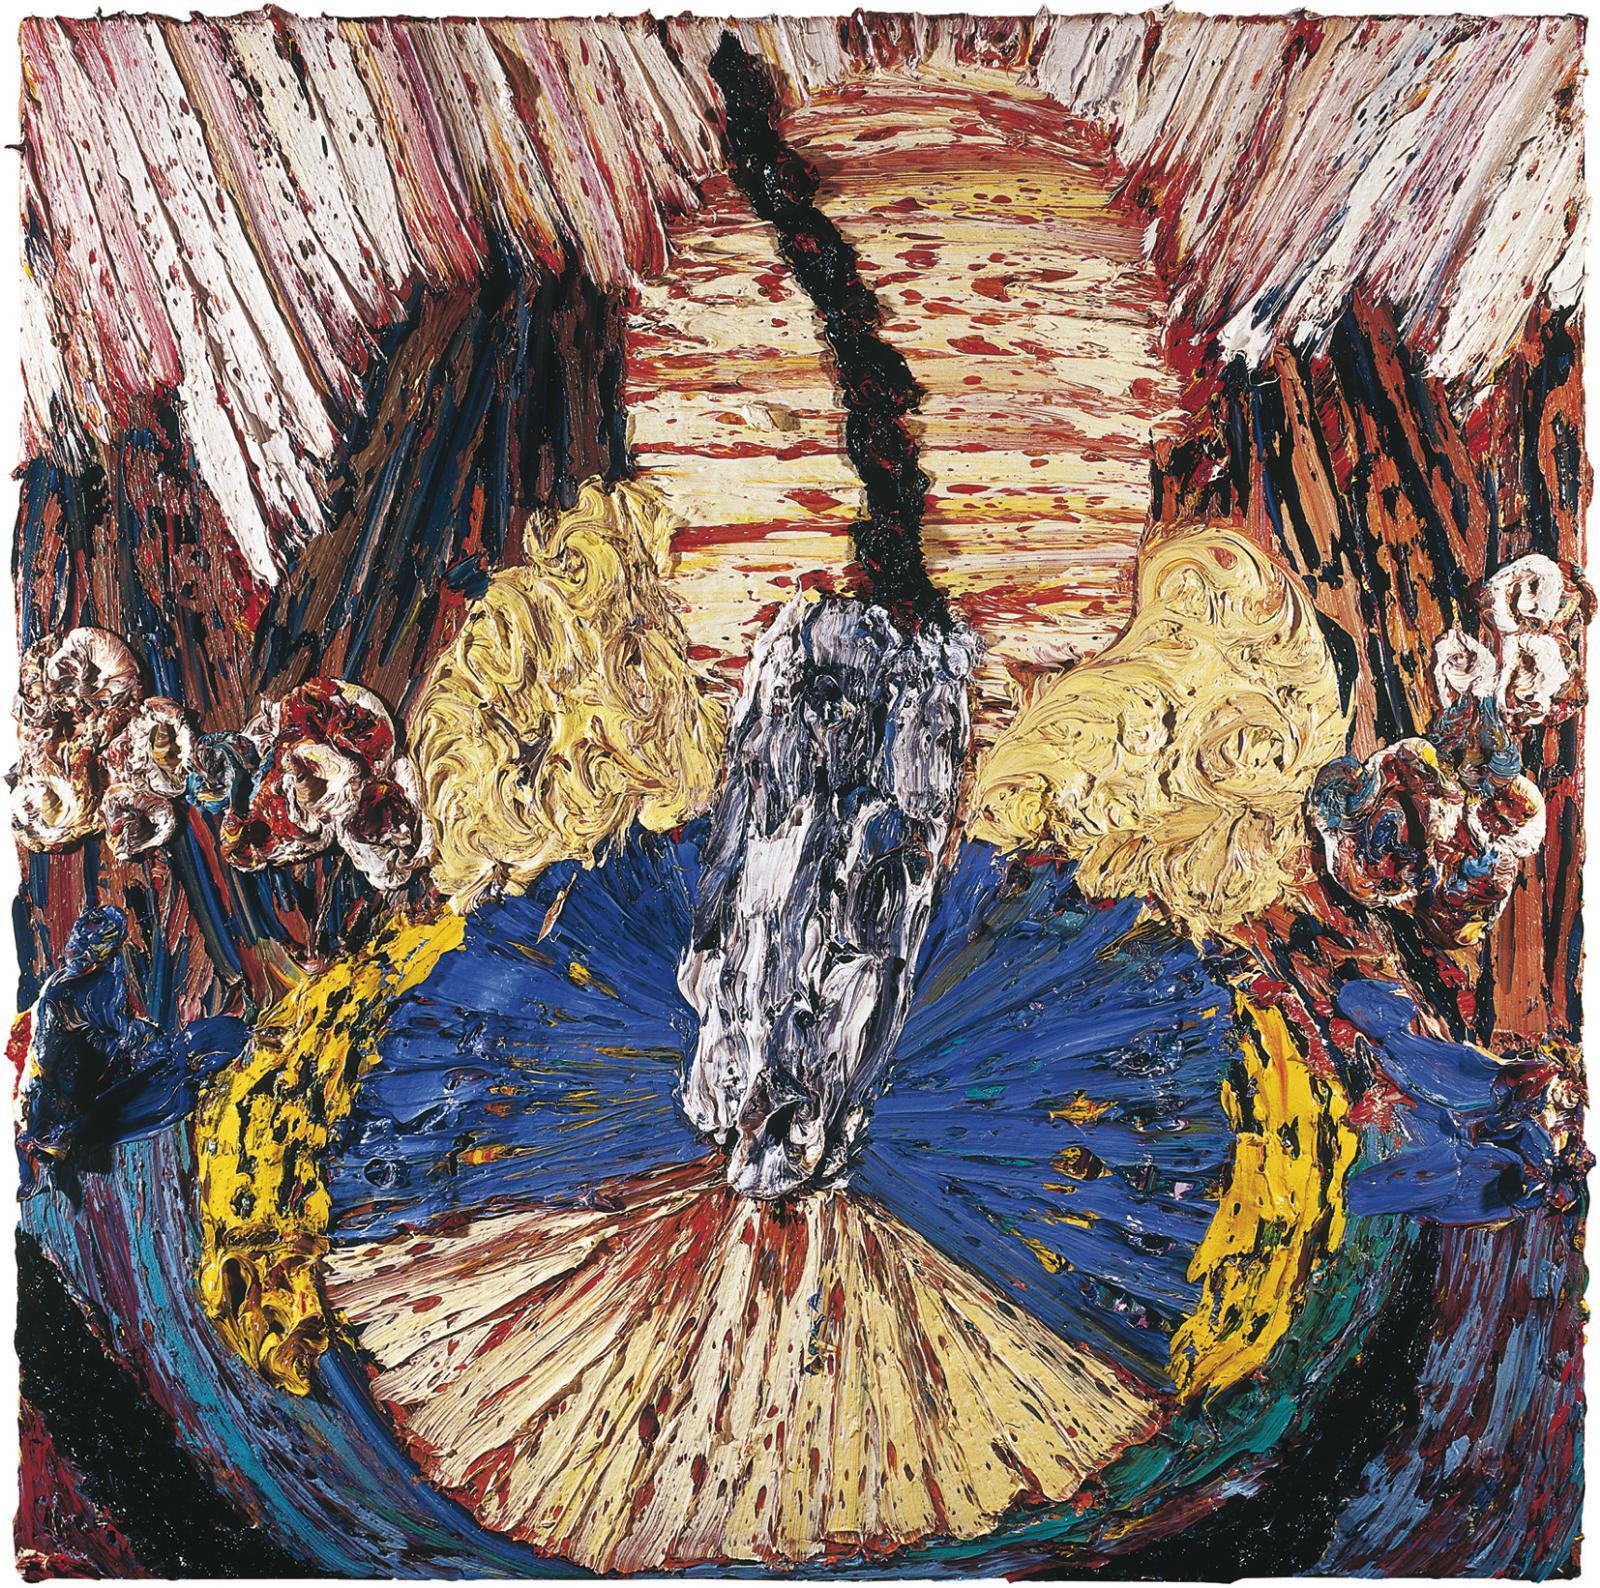 Harry Meyer, STILLES LEBEN BLUMEN, 2012, Öl auf Leinwand, 100 cm x 100 cm, Preis auf Anfrage, mey015kü